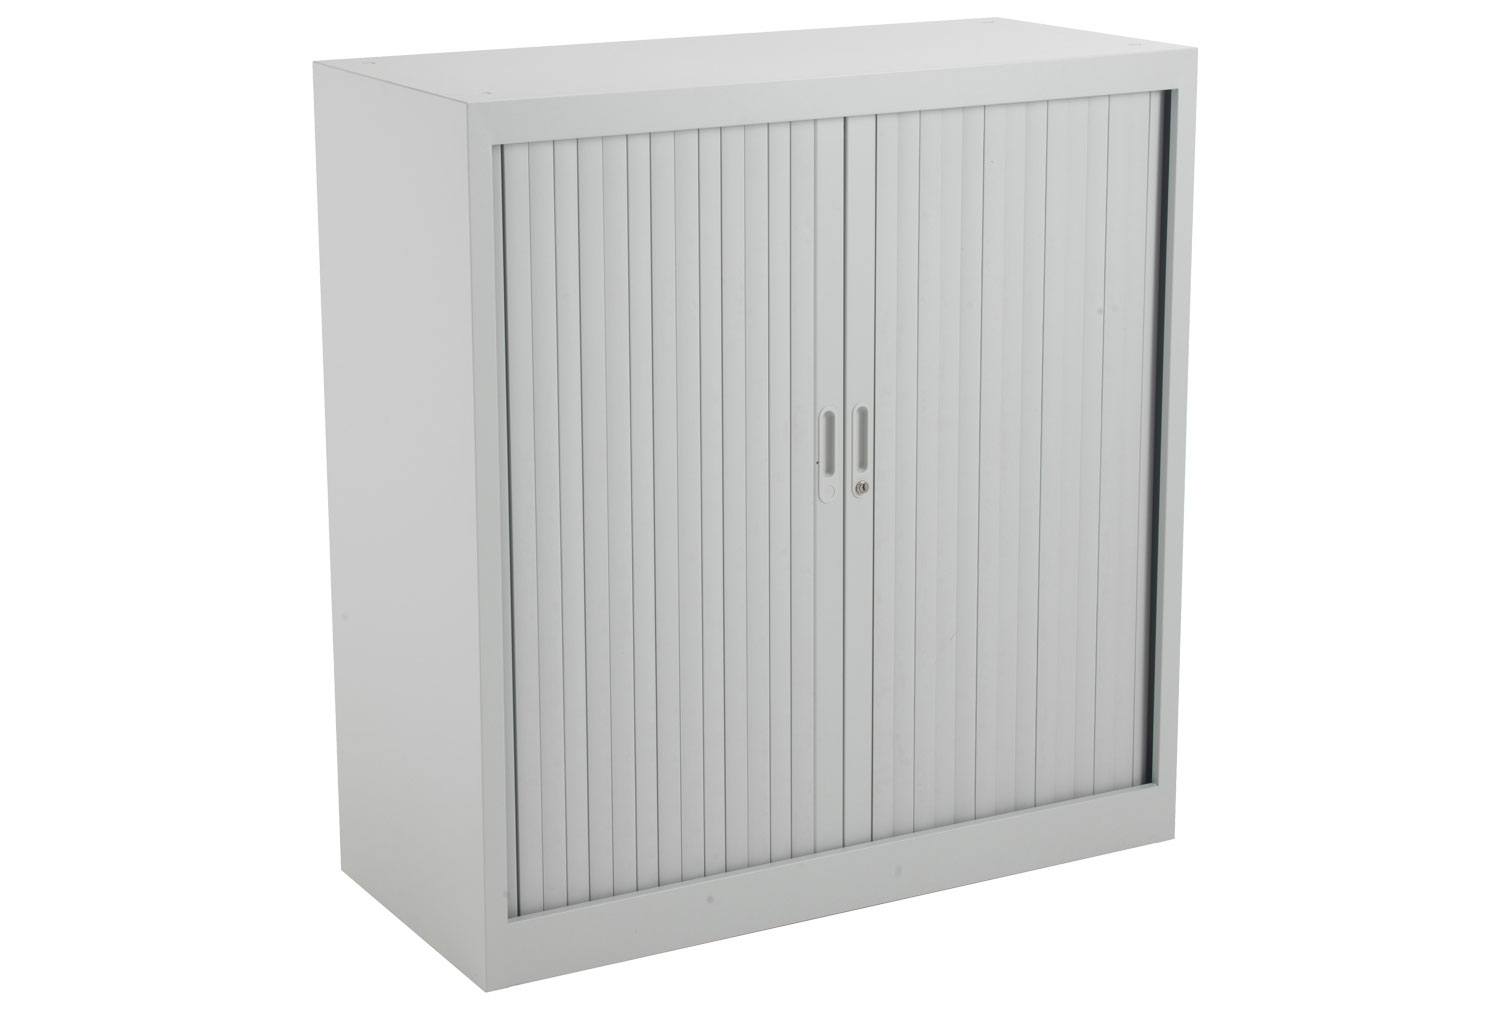 Value Line Metal Tambour Door Office Cupboards, 2 Shelf - 100wx45dx105h (cm), Grey, Express Delivery